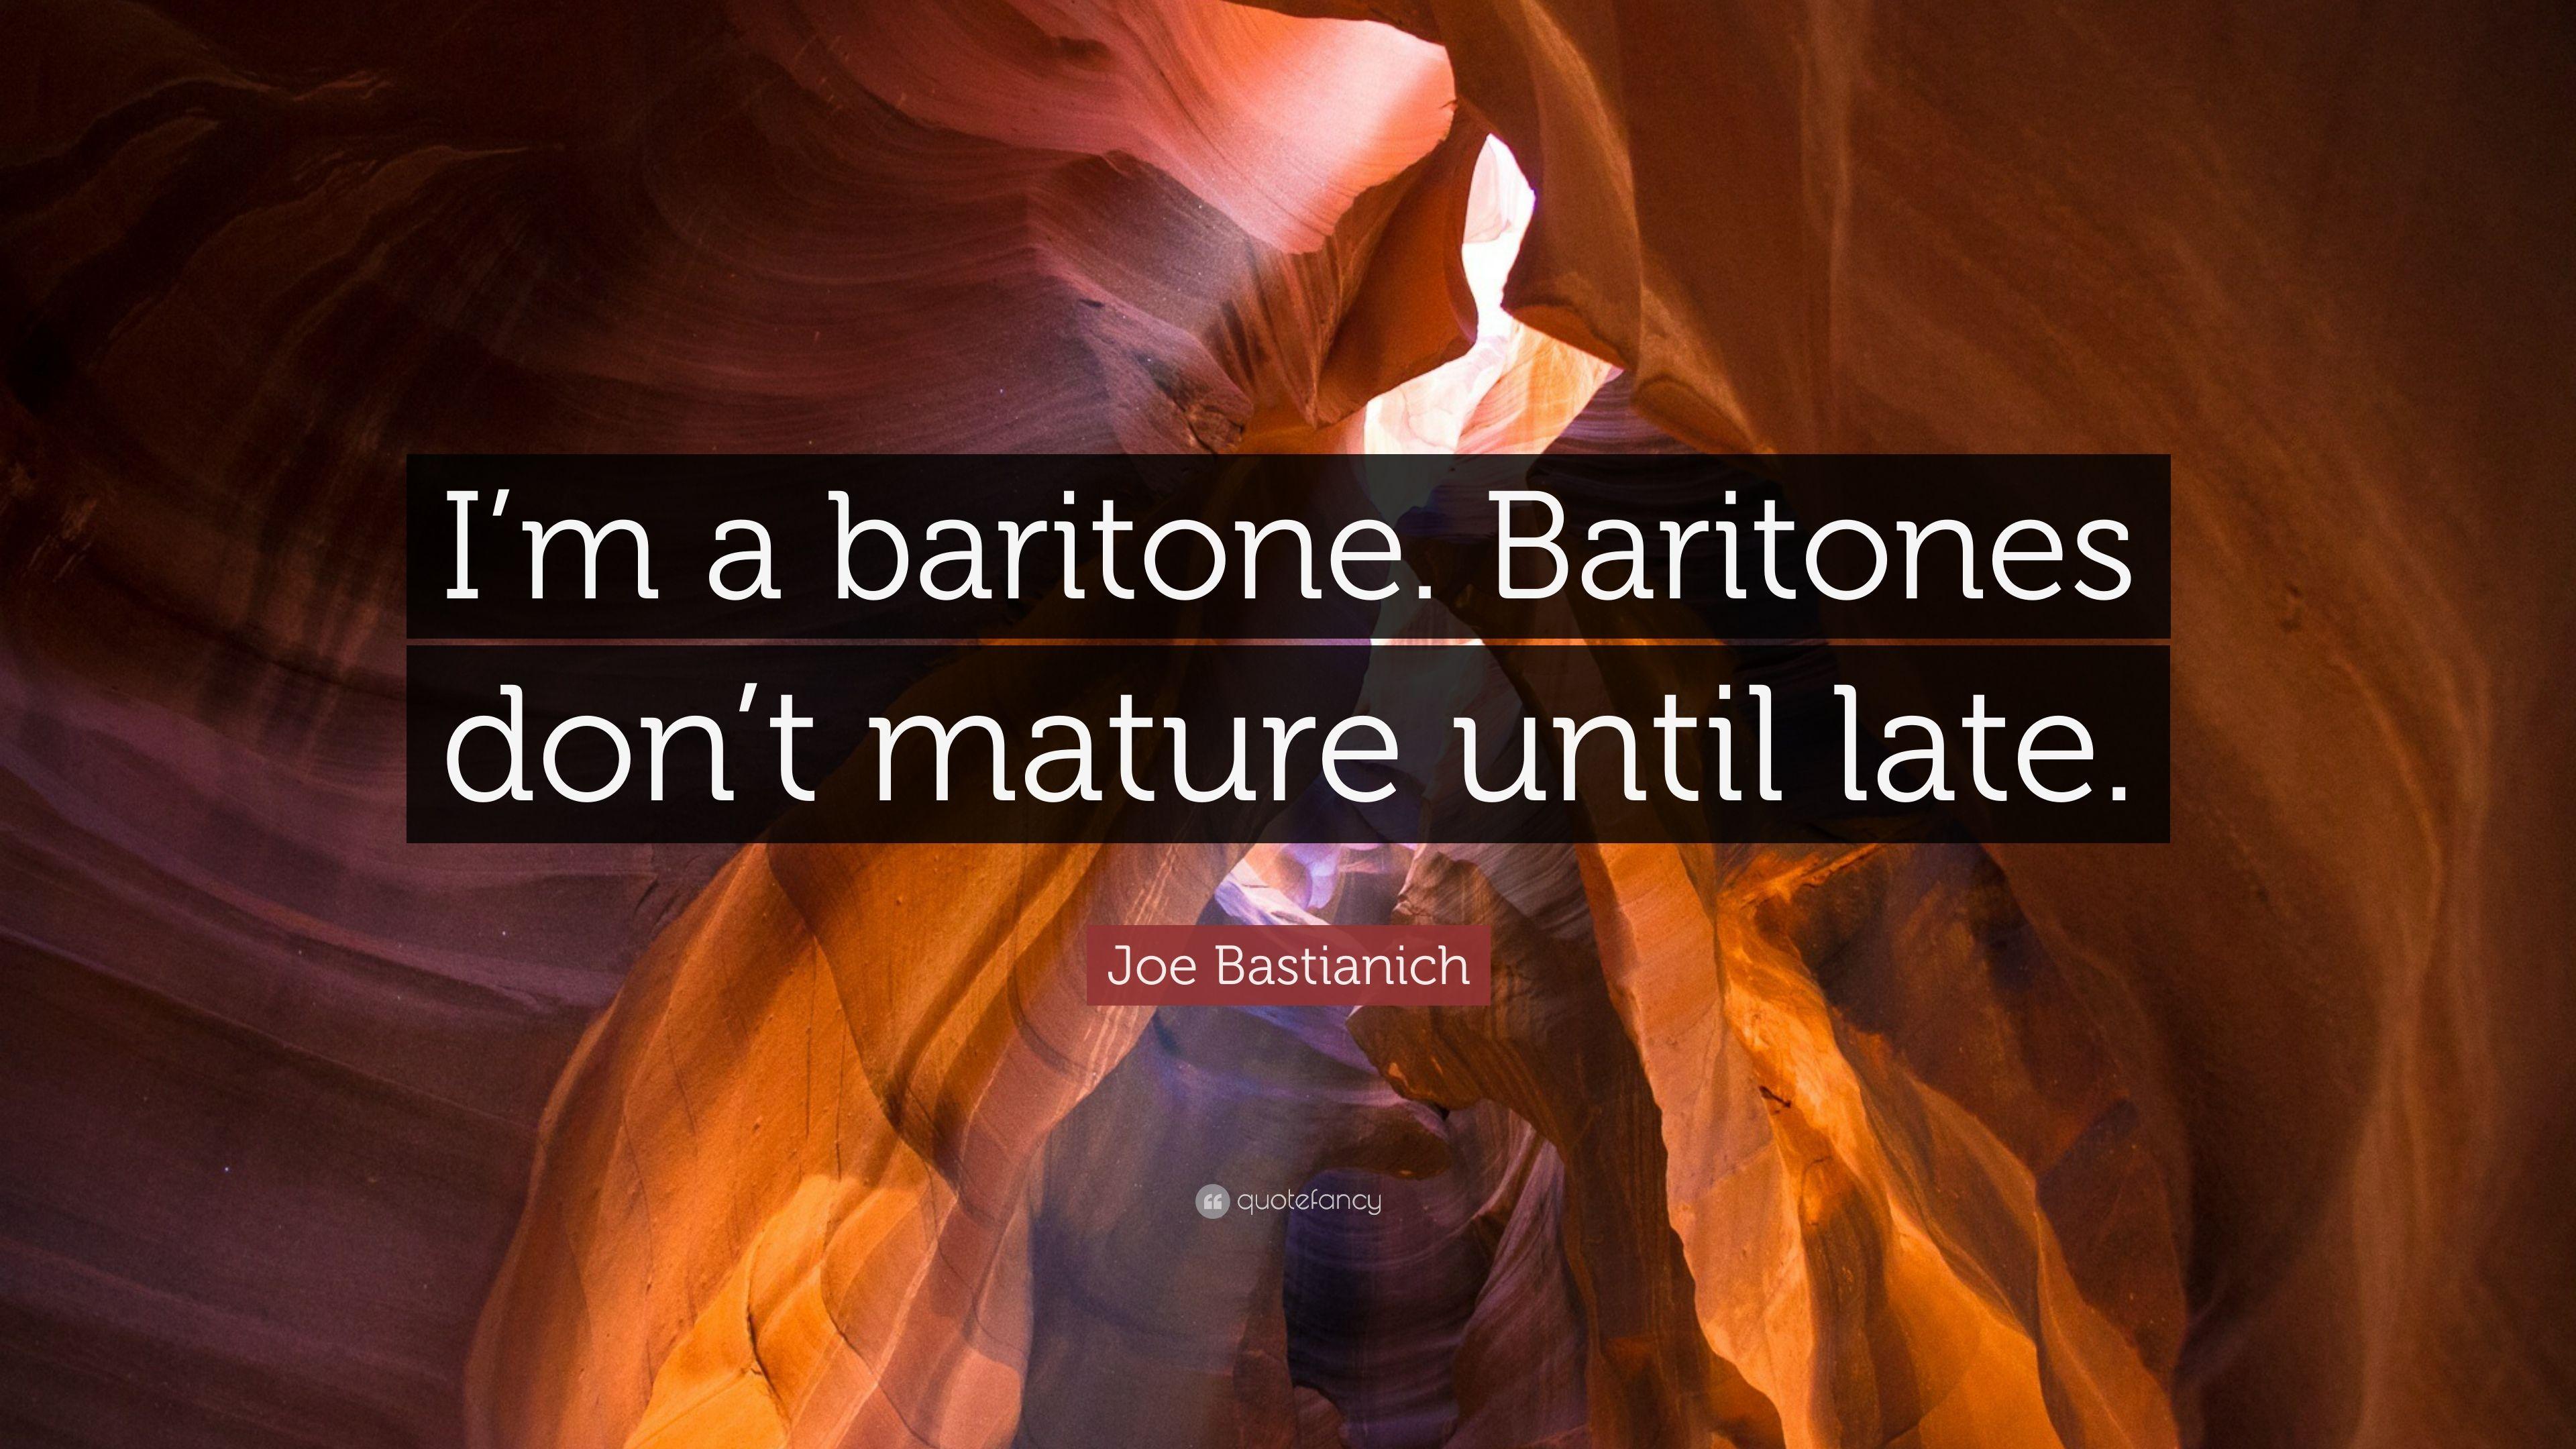 Joe Bastianich Quote: “I'm a baritone. Baritones don't mature until